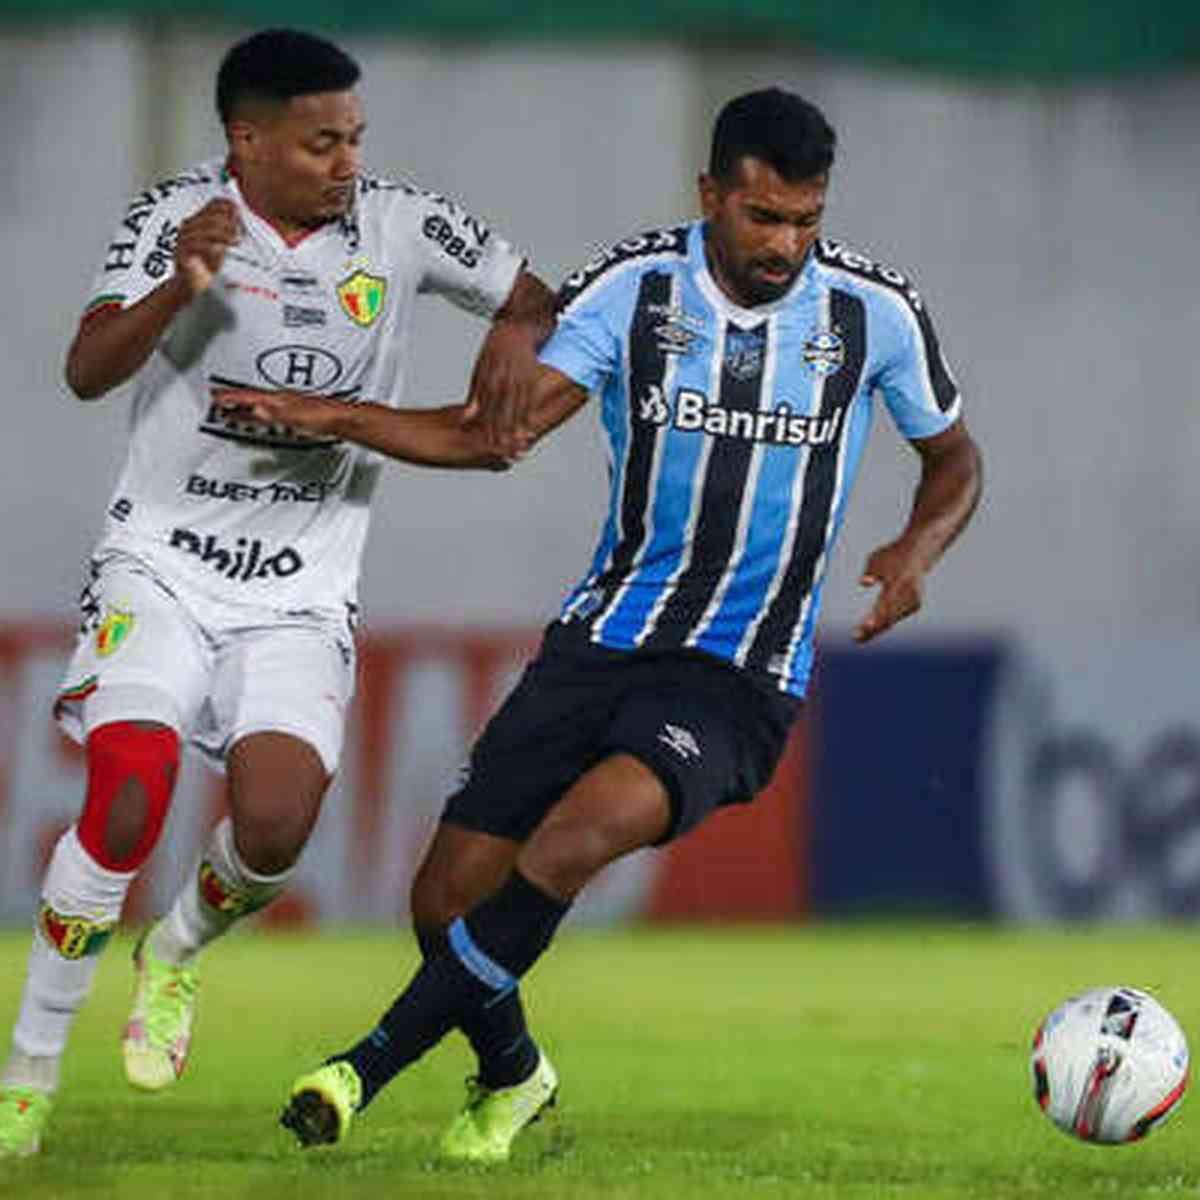 Ceará SC x Tombense: A Clash of Titans in the Campeonato Brasileiro Série C